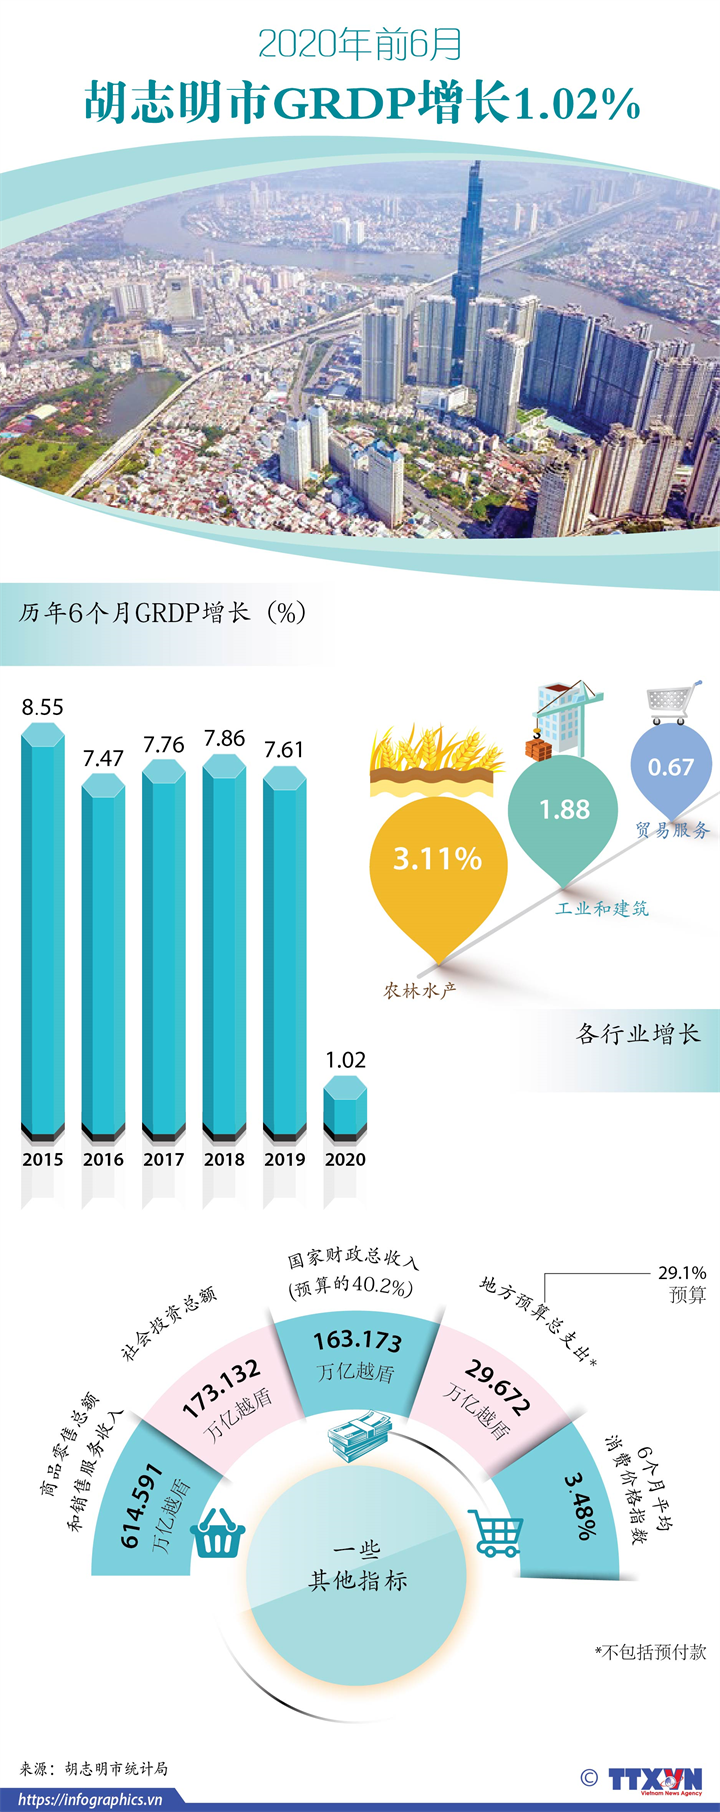 2020年前6月胡志明市GRDP增长1.02%